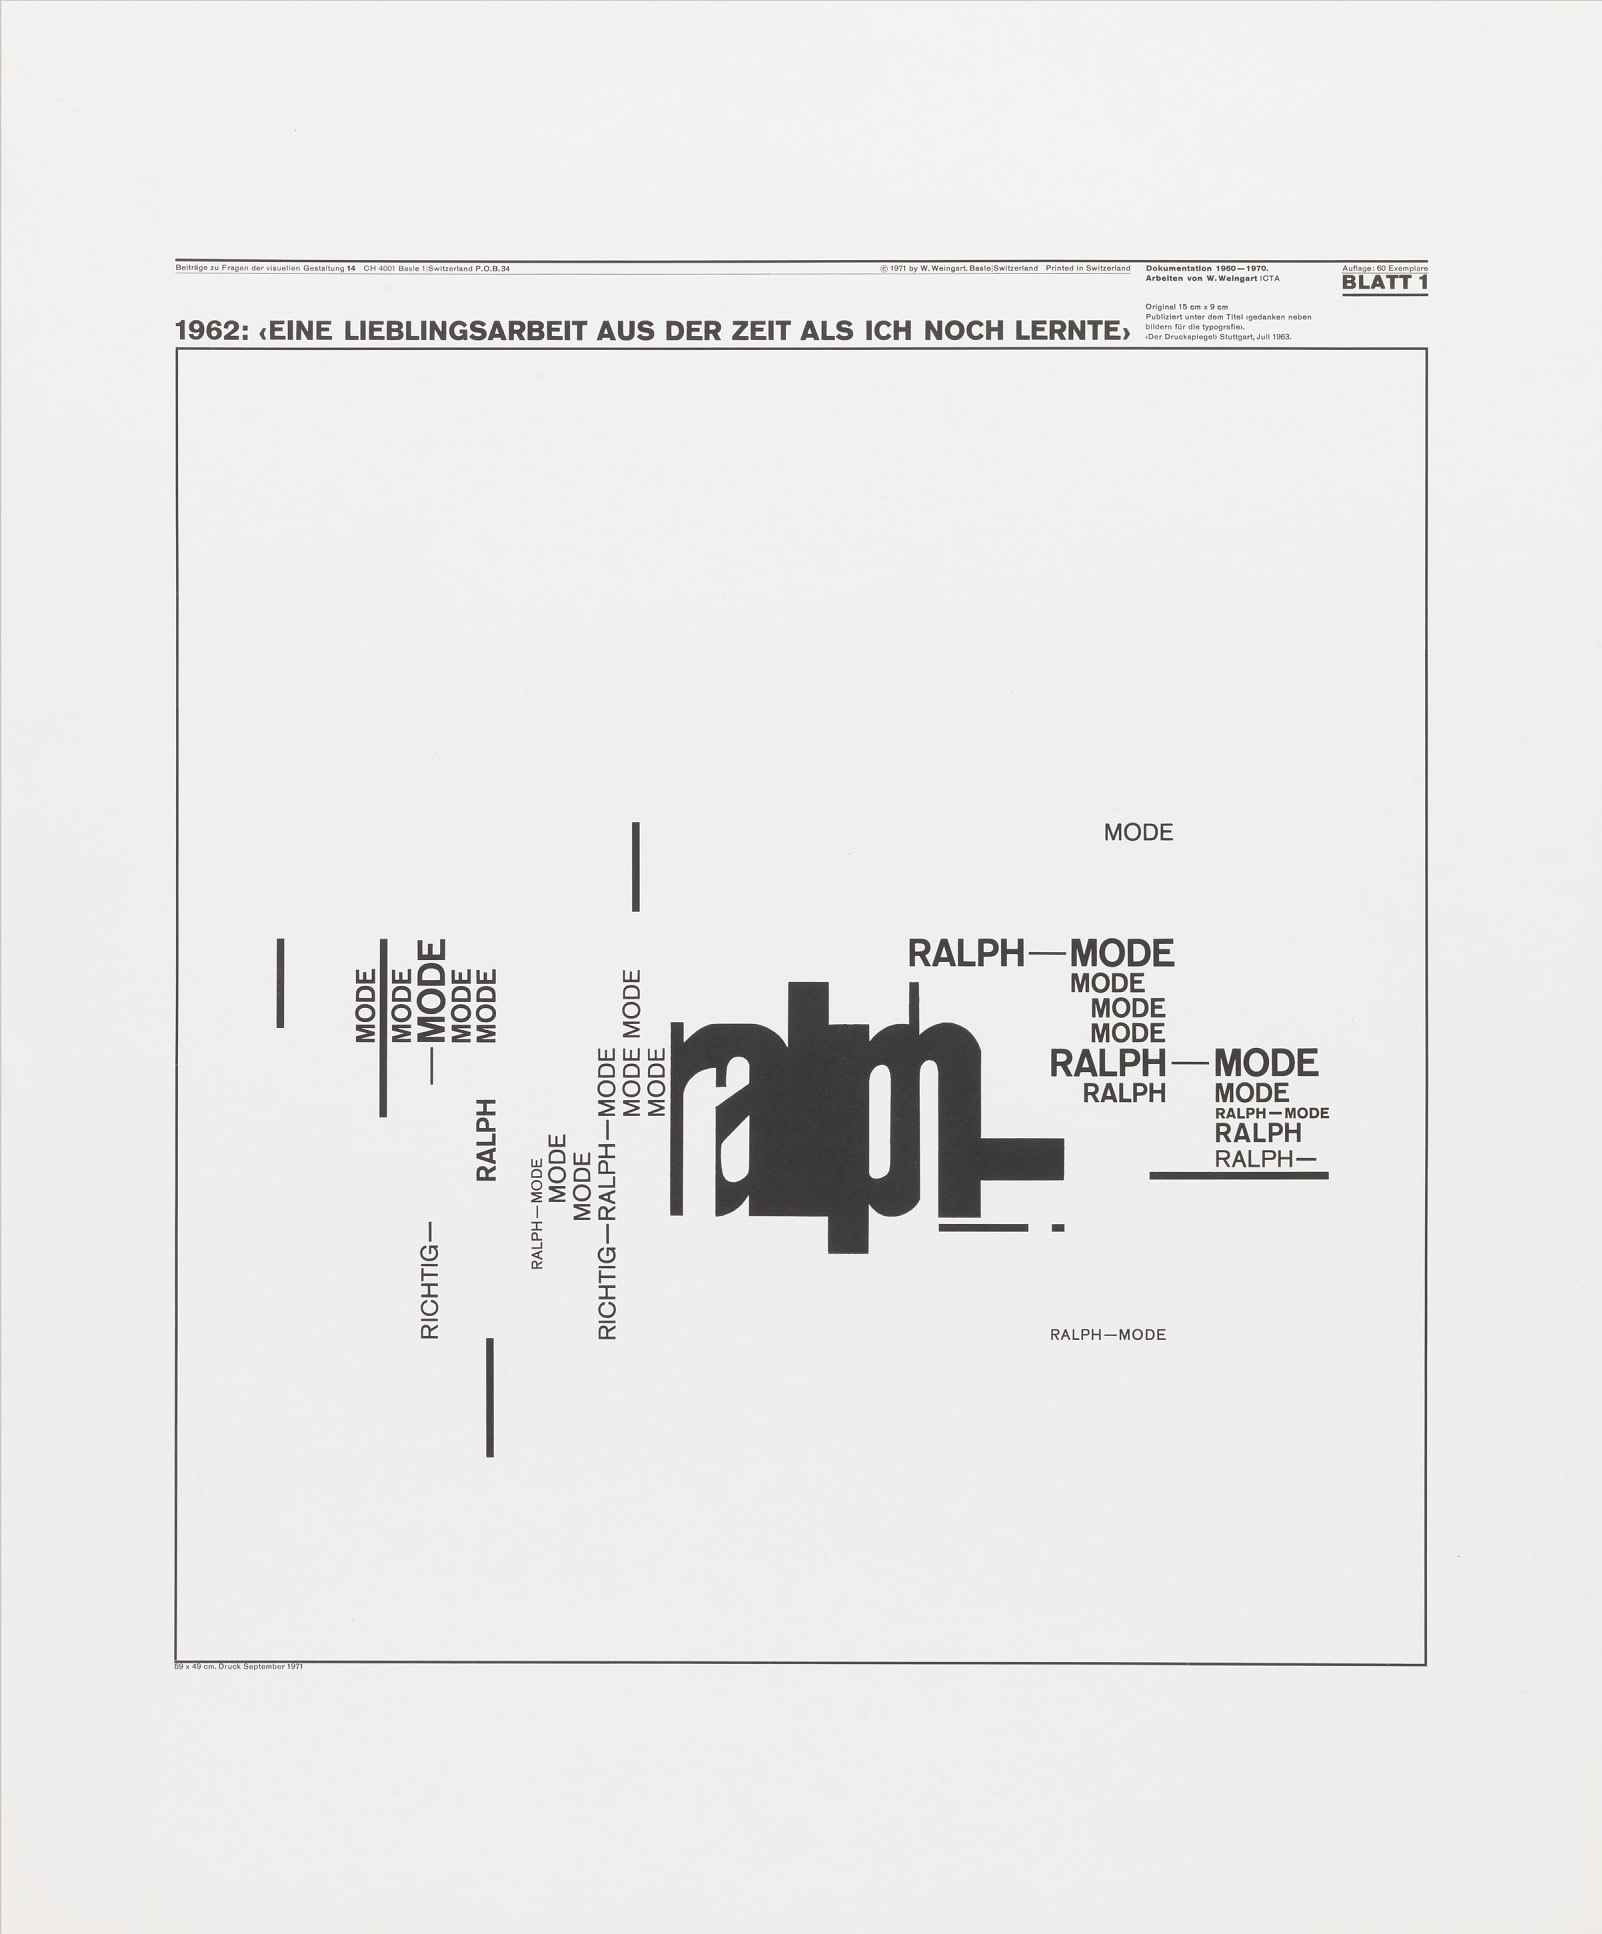 Wolfgang Weingart: Beiträge zu Fragen der visuellen Gestaltung 14, Blatt 1 from the portfolio Dokumentation 1960—1970, Arbeiten von W. Weingart, Designed 1962. Lithograph. (58.9 x 49 cm)